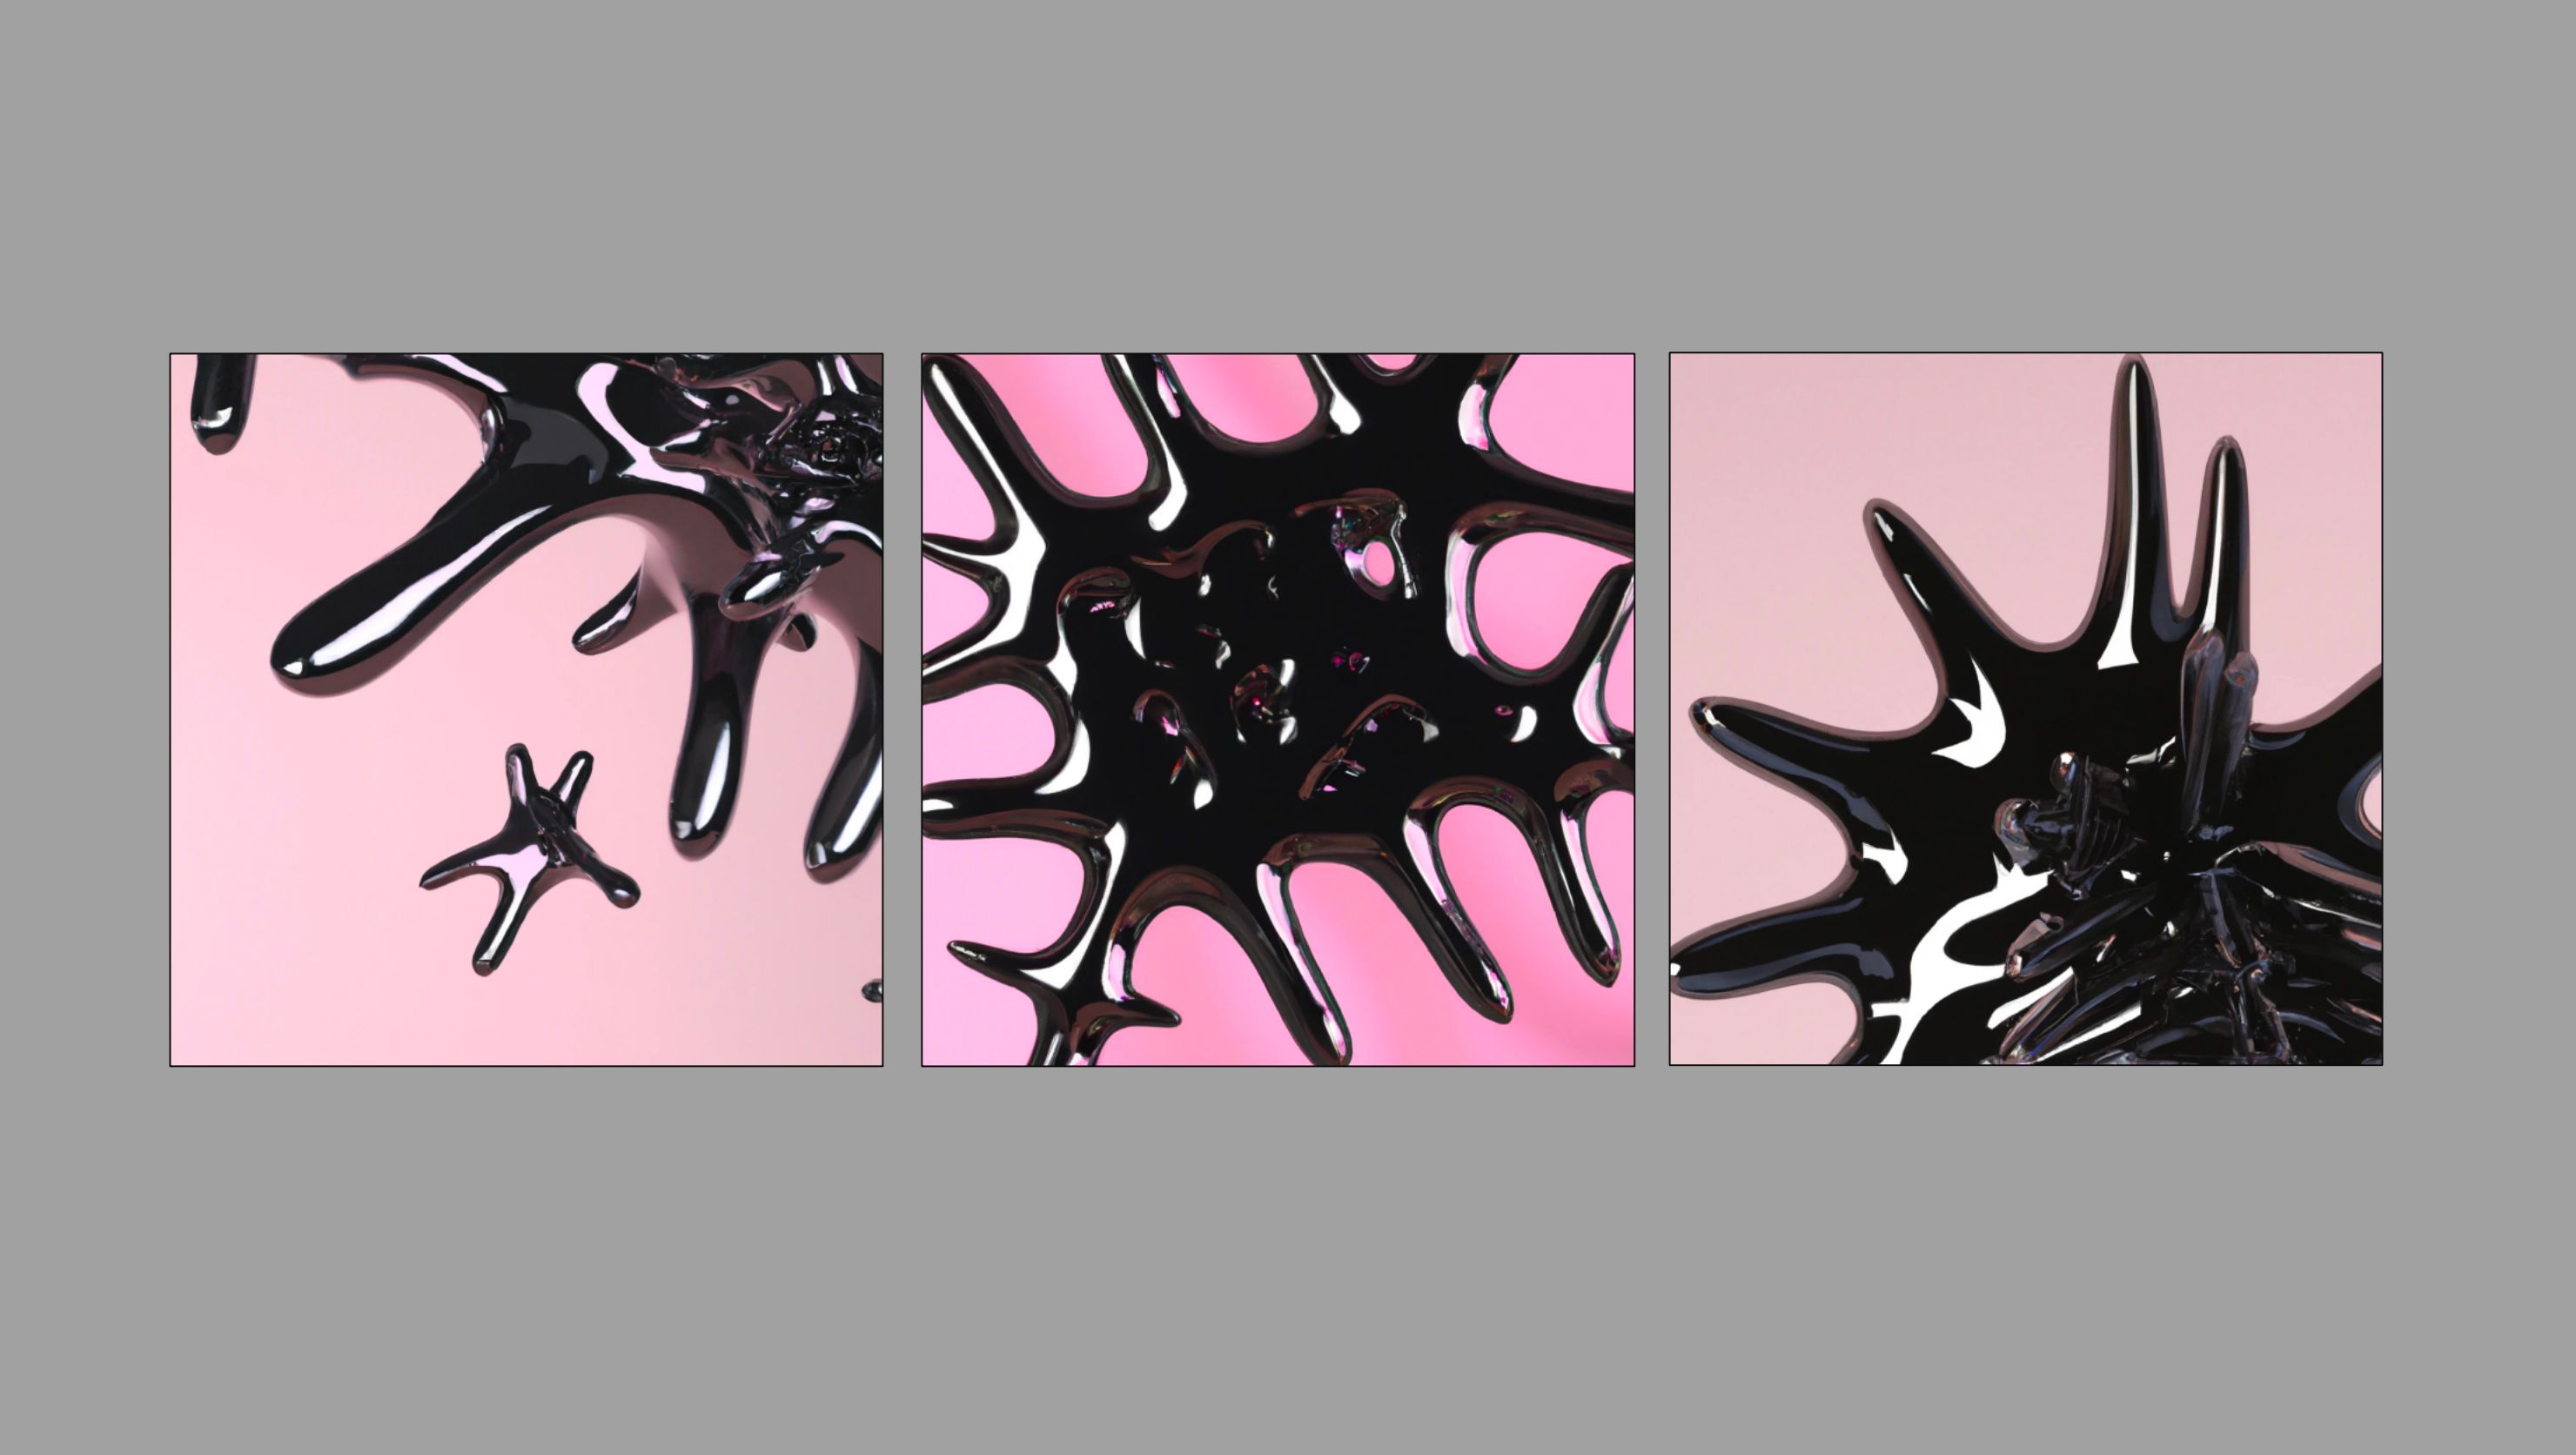 Imagem gerada por IA de ferrofluido preto em um fundo piank feita usando Dall-E